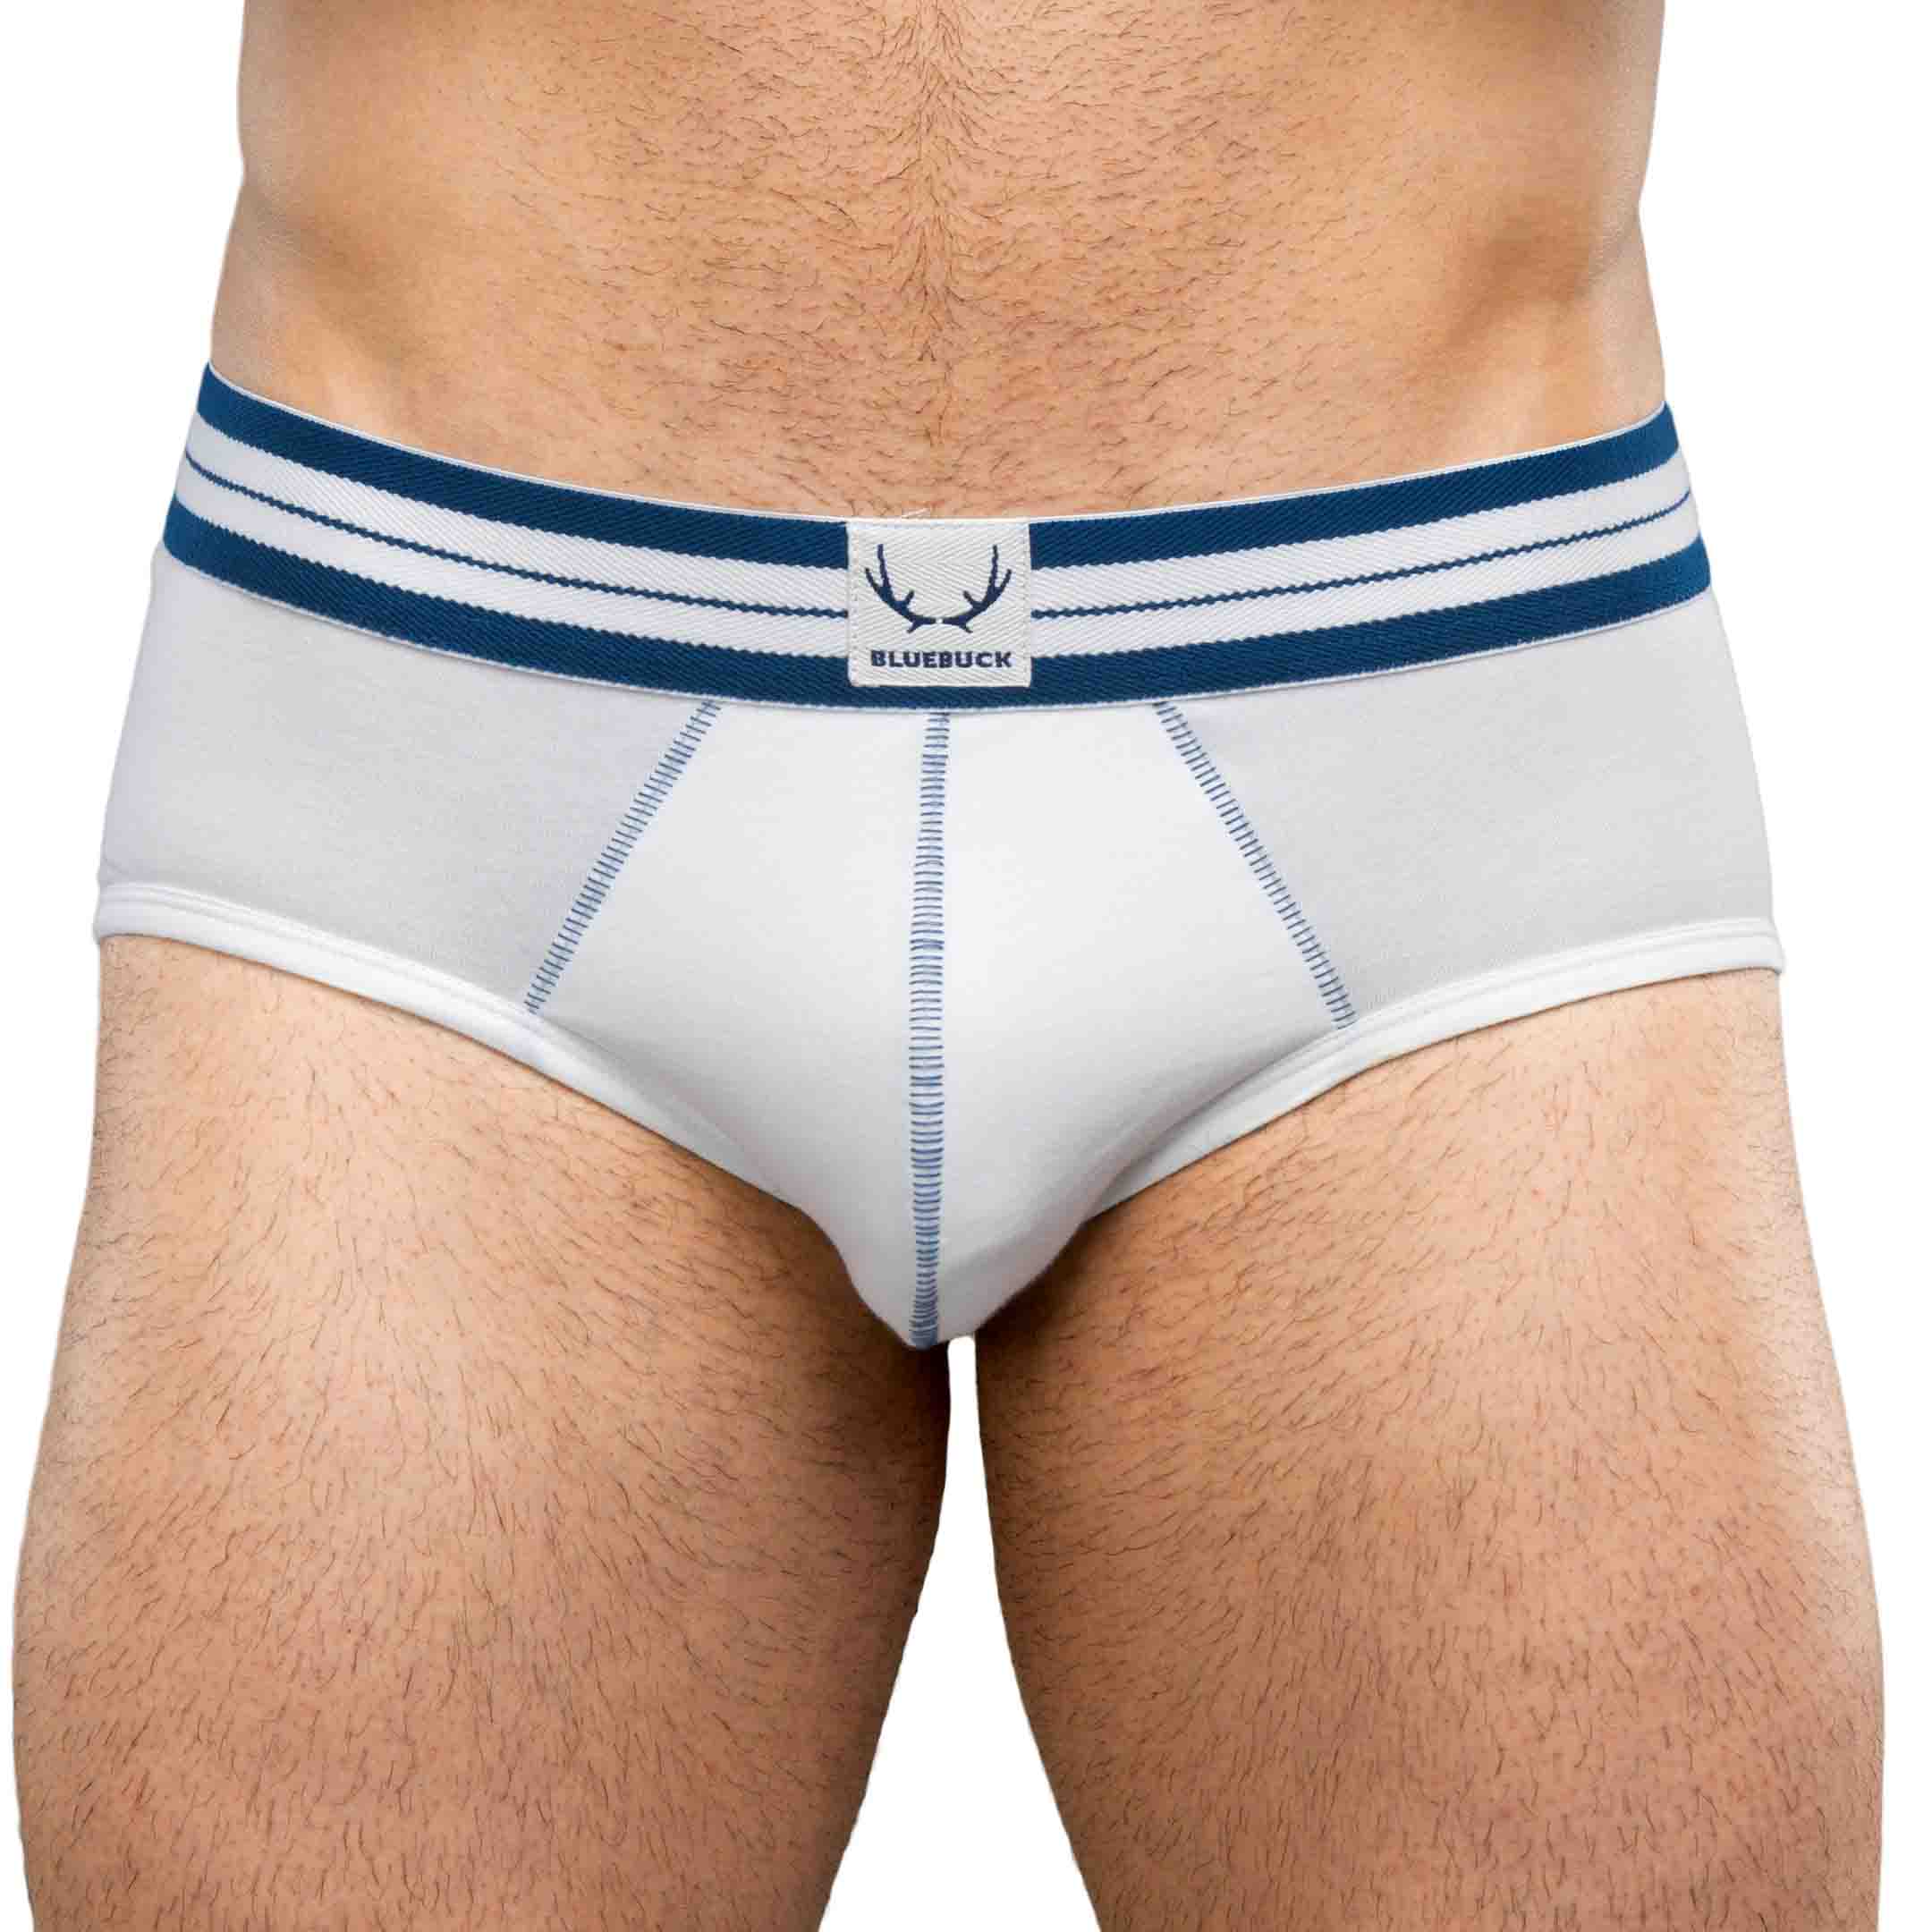 white briefs - blue stitching - Bluebuck men's underwear - BLUEBUCK